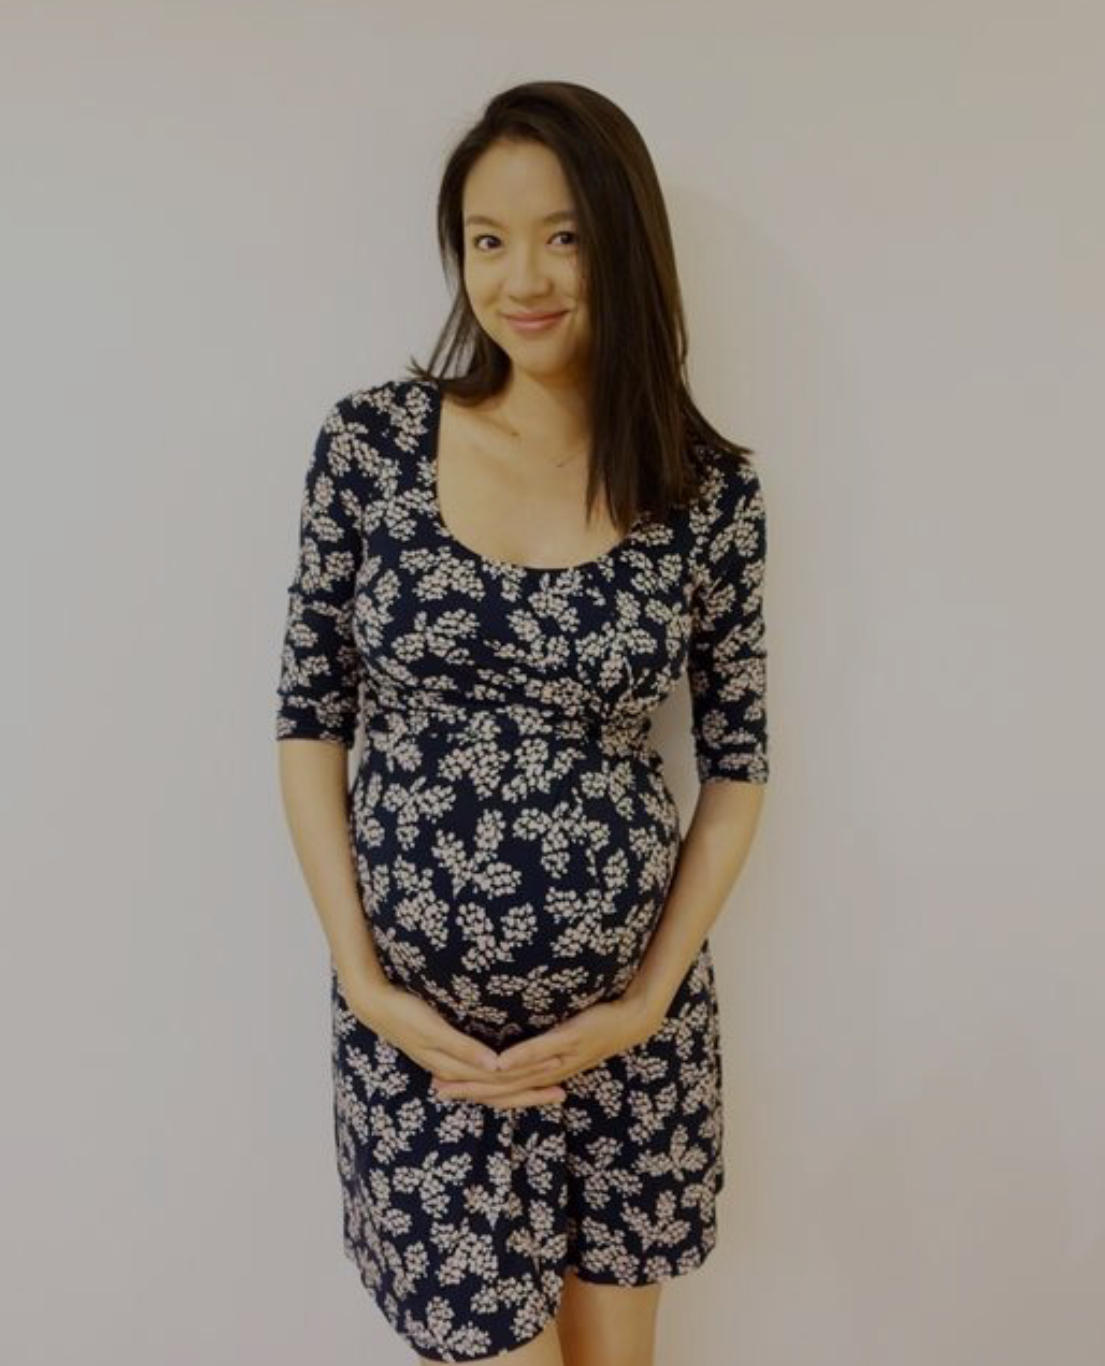 原创张梓琳素颜亮相,挺7月孕肚正面看不出怀孕,短裙下双腿依旧纤细